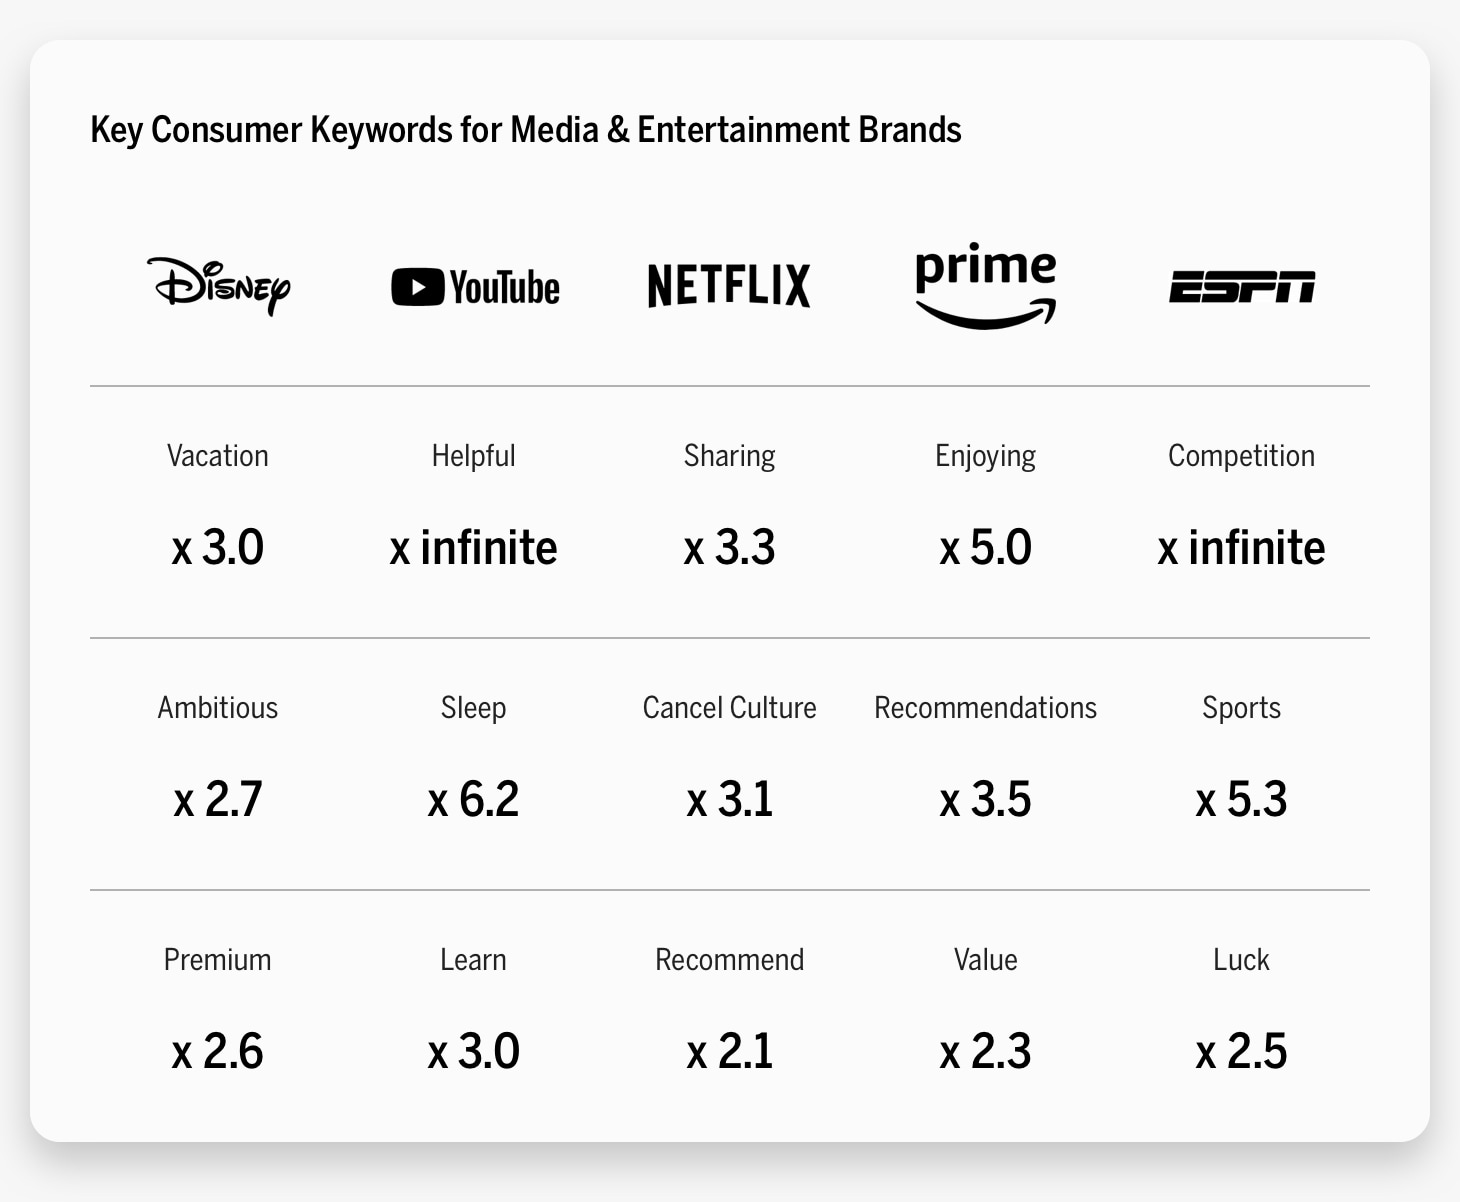 Key Consumer Keywords for Media & Entertainment Brands Chart